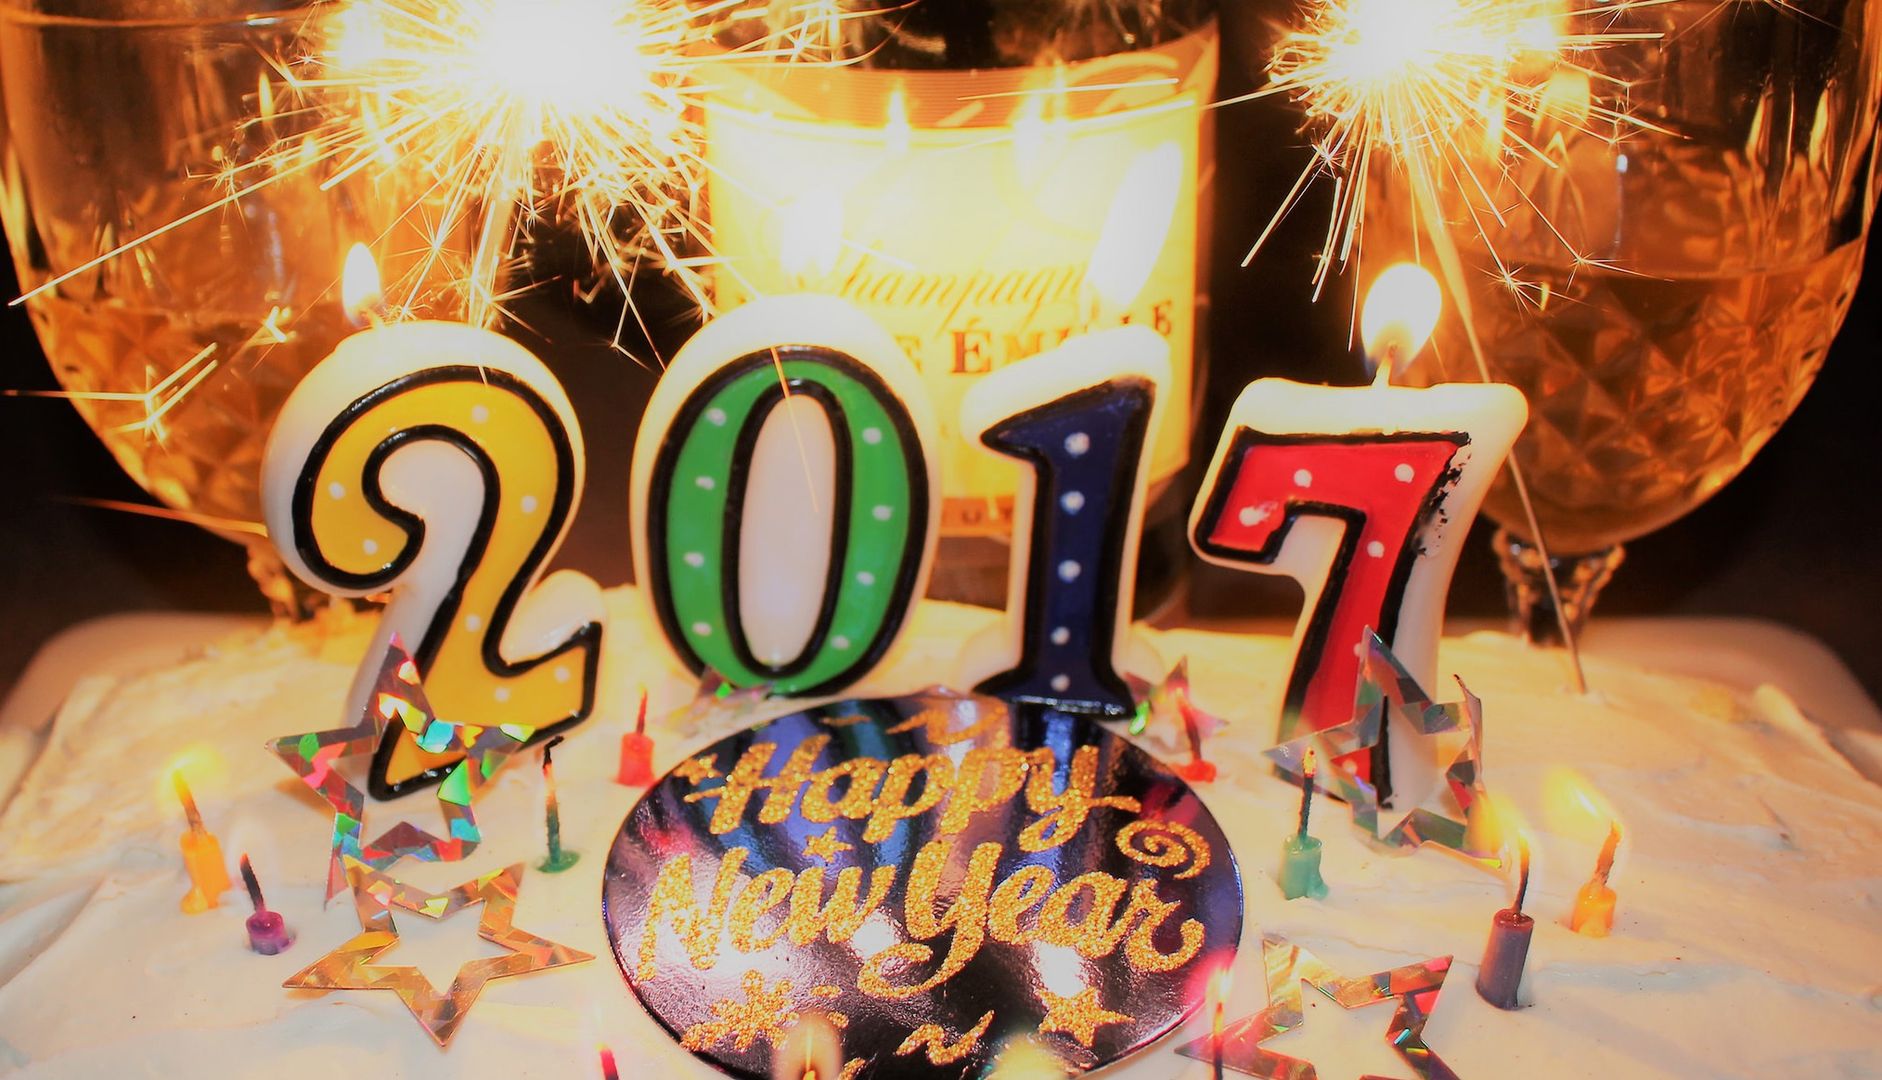 Życzenia noworoczne 2016/2017. Najśmieszniejsze i najbardziej pomysłowe